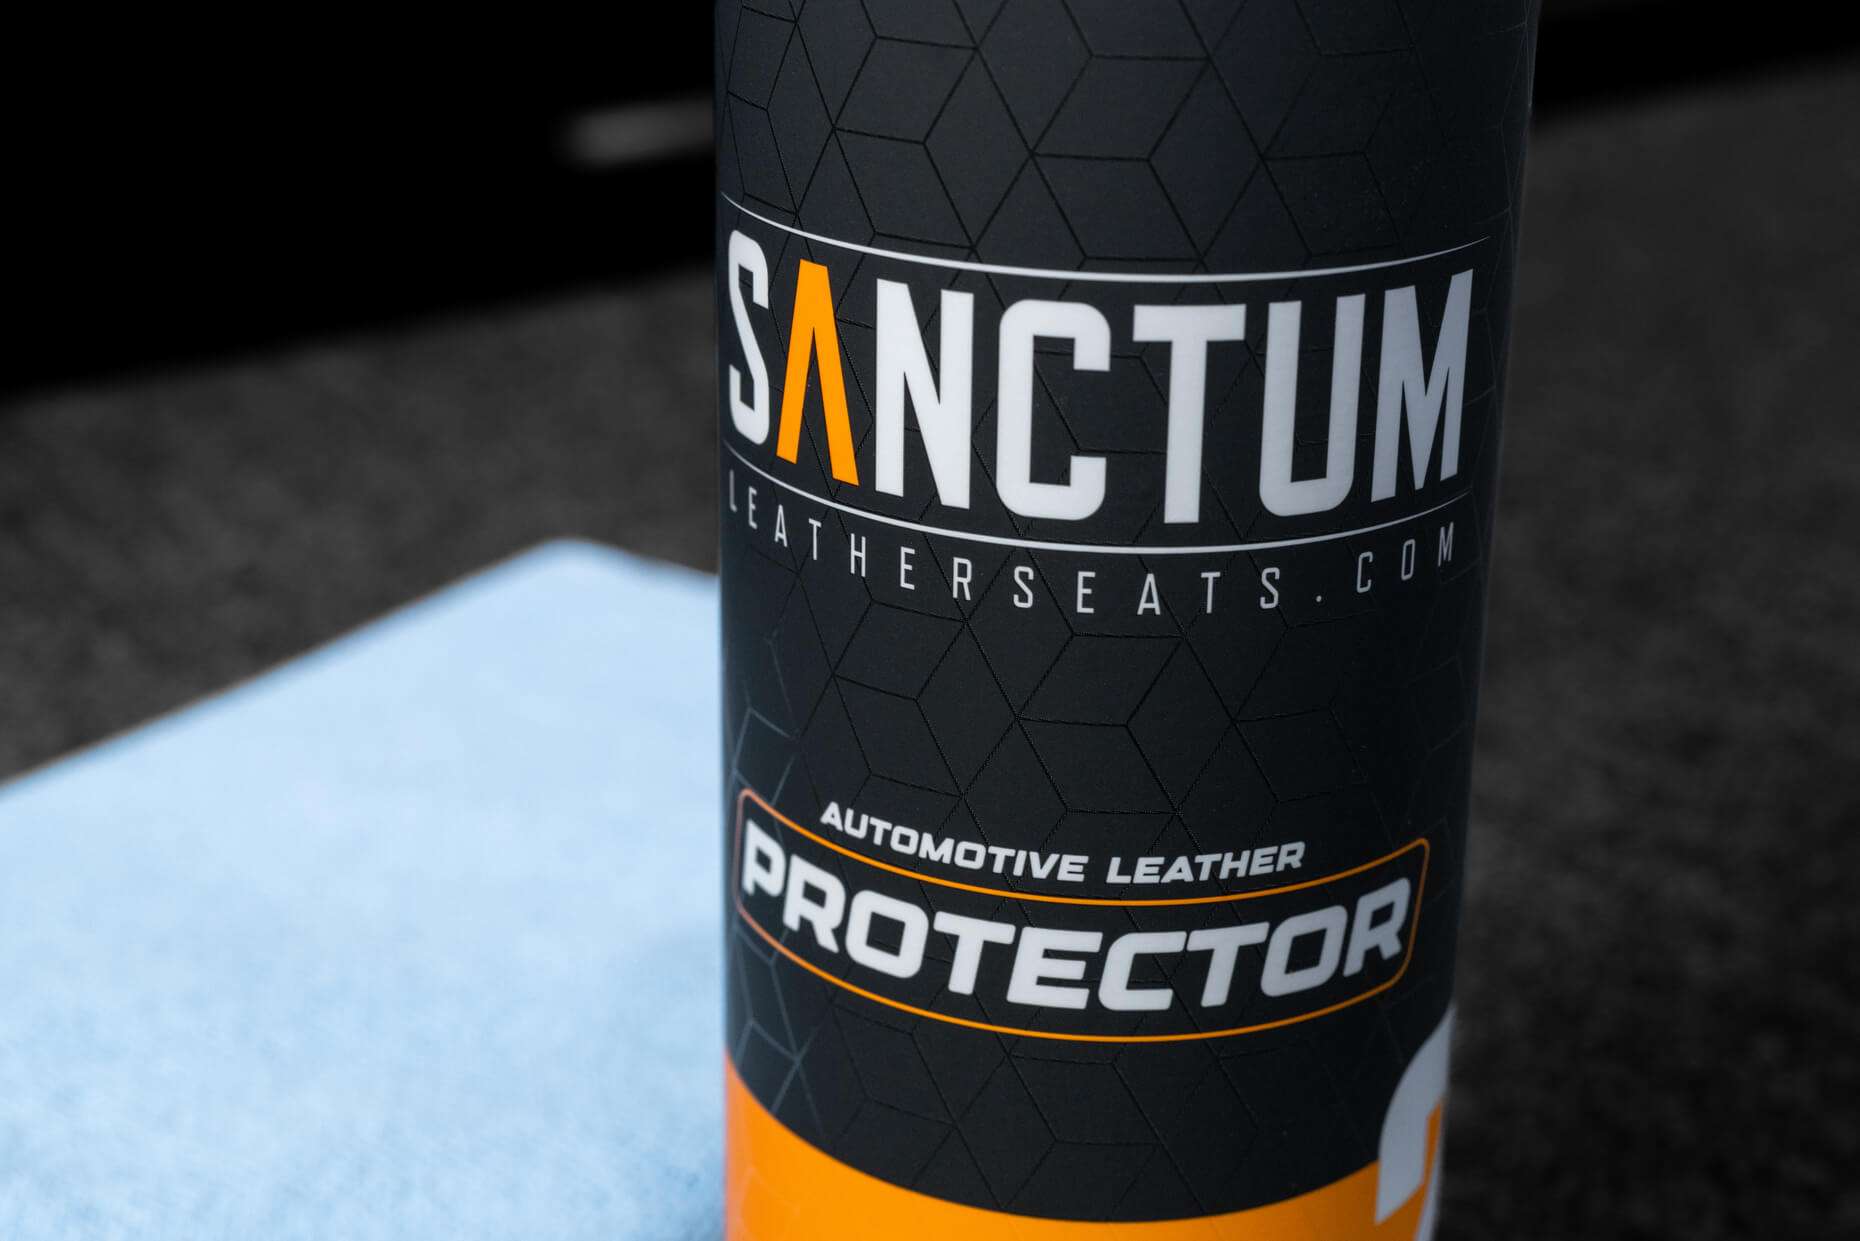 Sanctum LeatherSeats.com Automotive Leather Protector label close-up